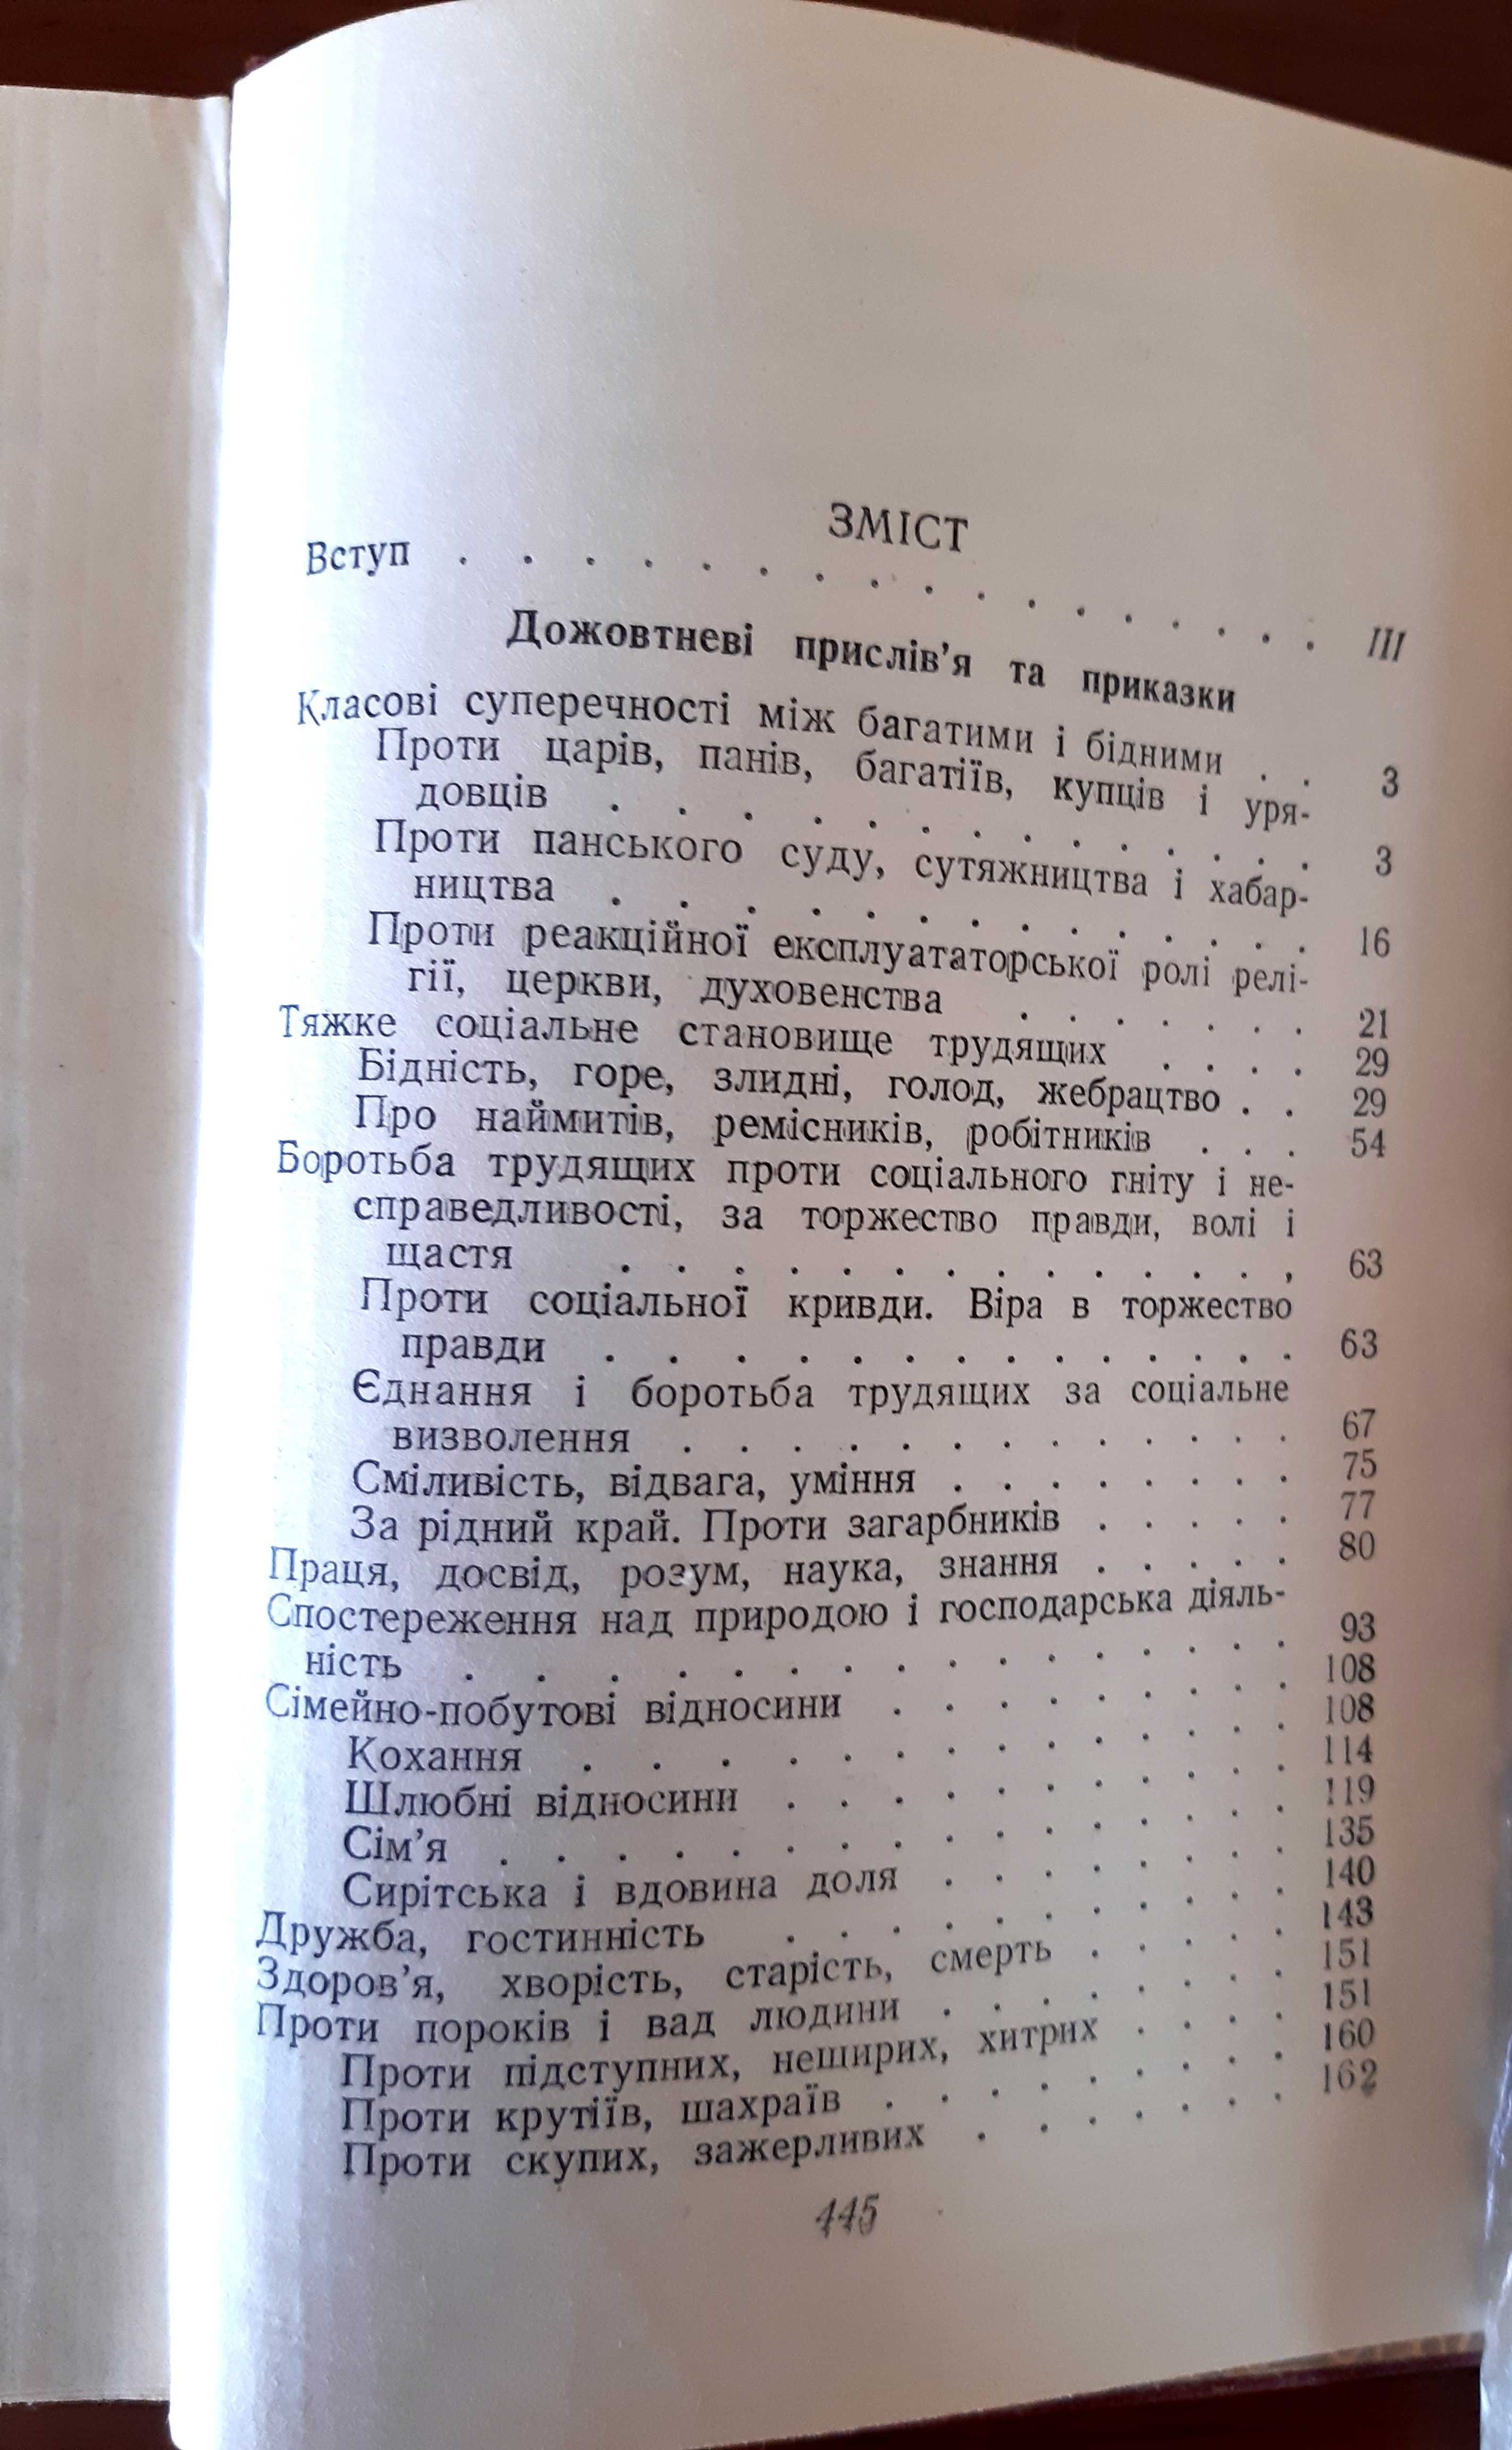 Збірка "Українські народні прислів'я та приказки". Видання 1955 р.